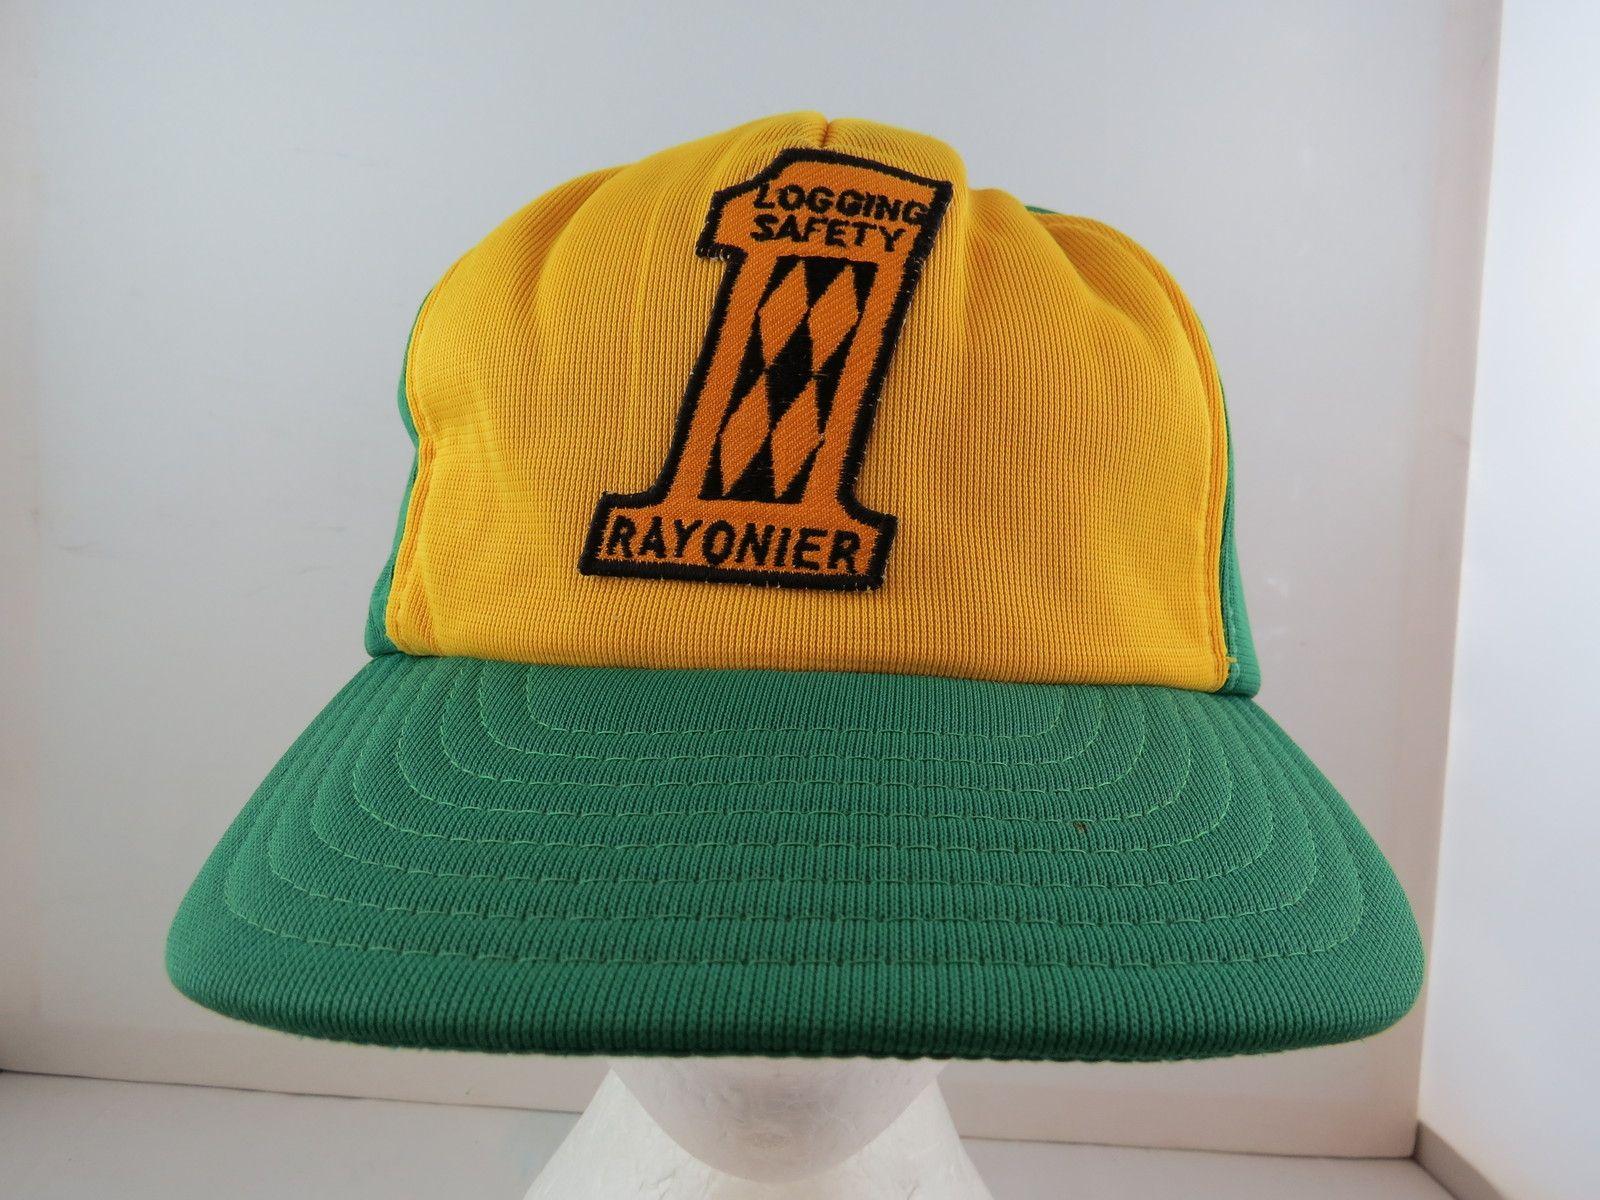 Vintage Logging Logo - Vintage Logging Hat – Rayonier – Logging Safety # 1 – Adult Snapback ...